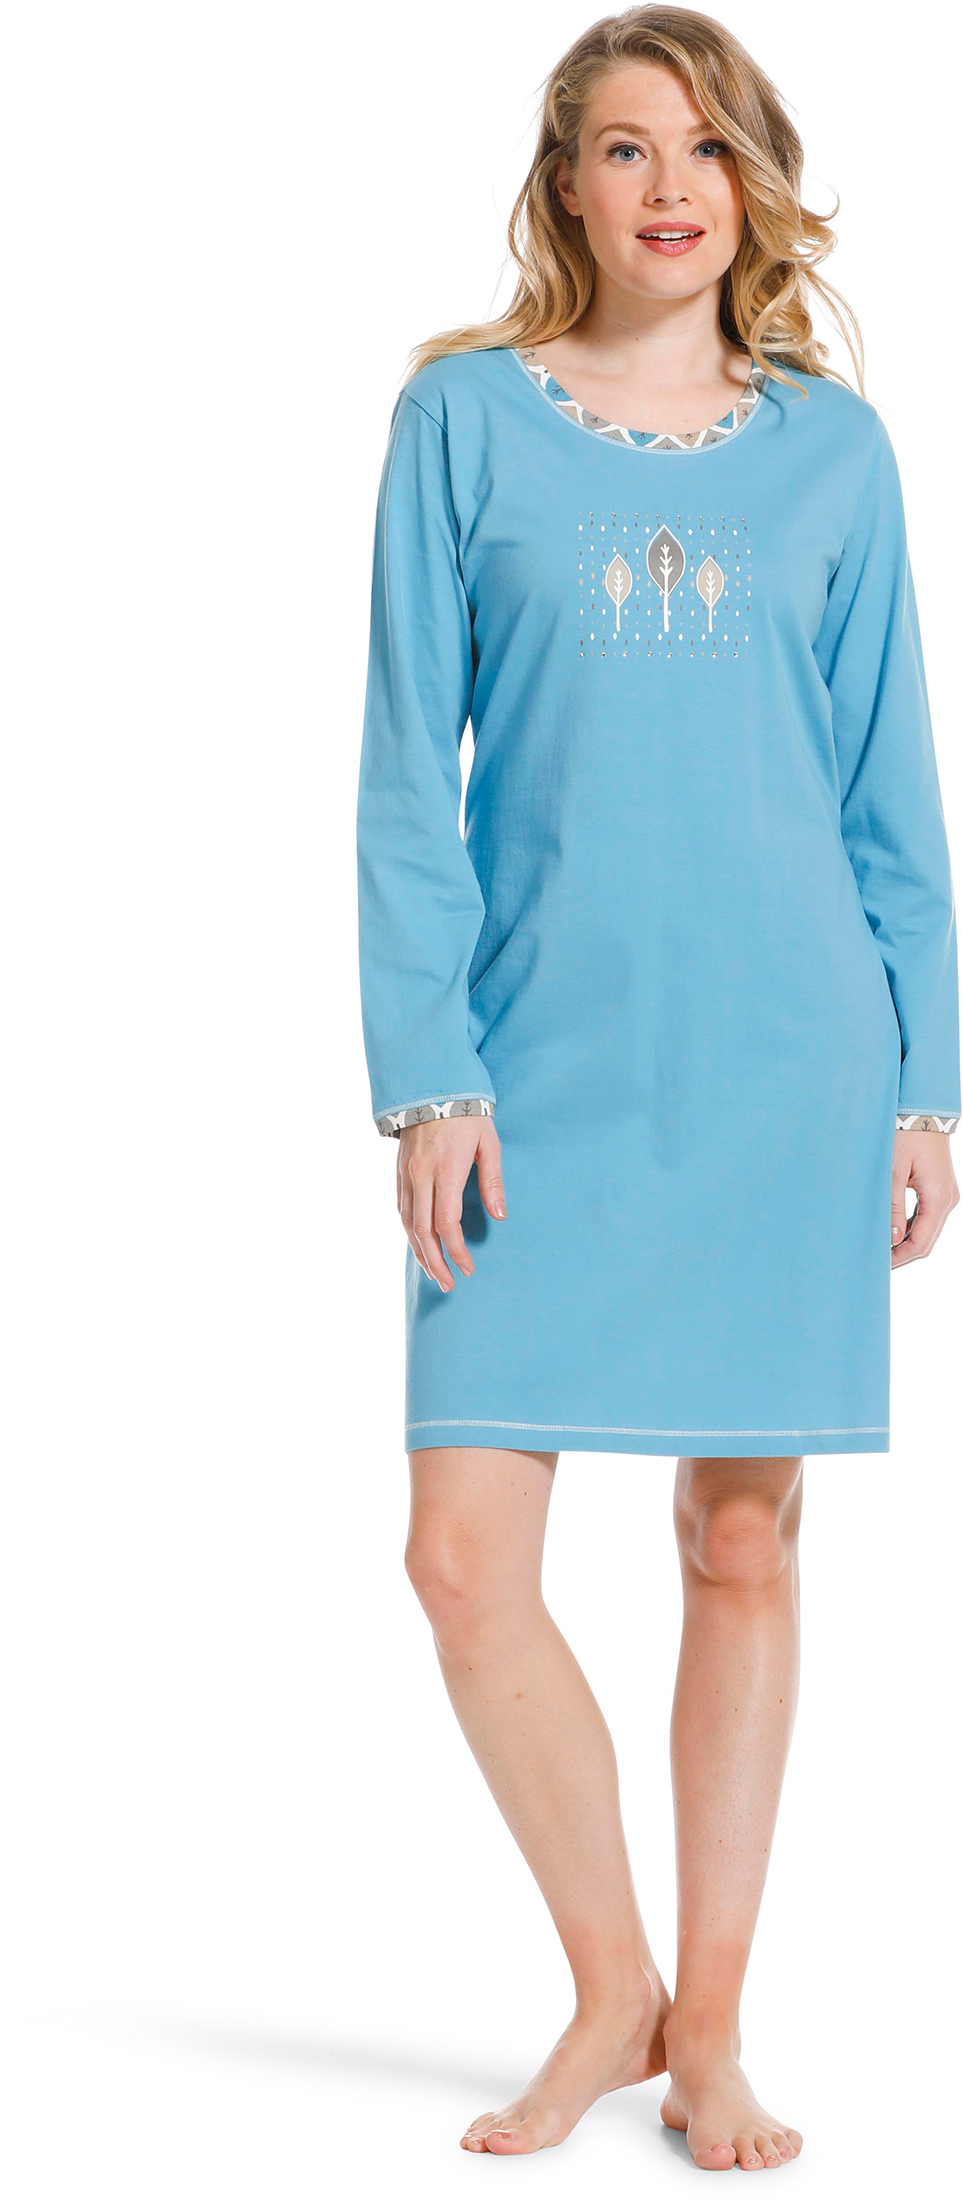 Pastunette dames nachthemd 10222-138-2 - Blauw - 50